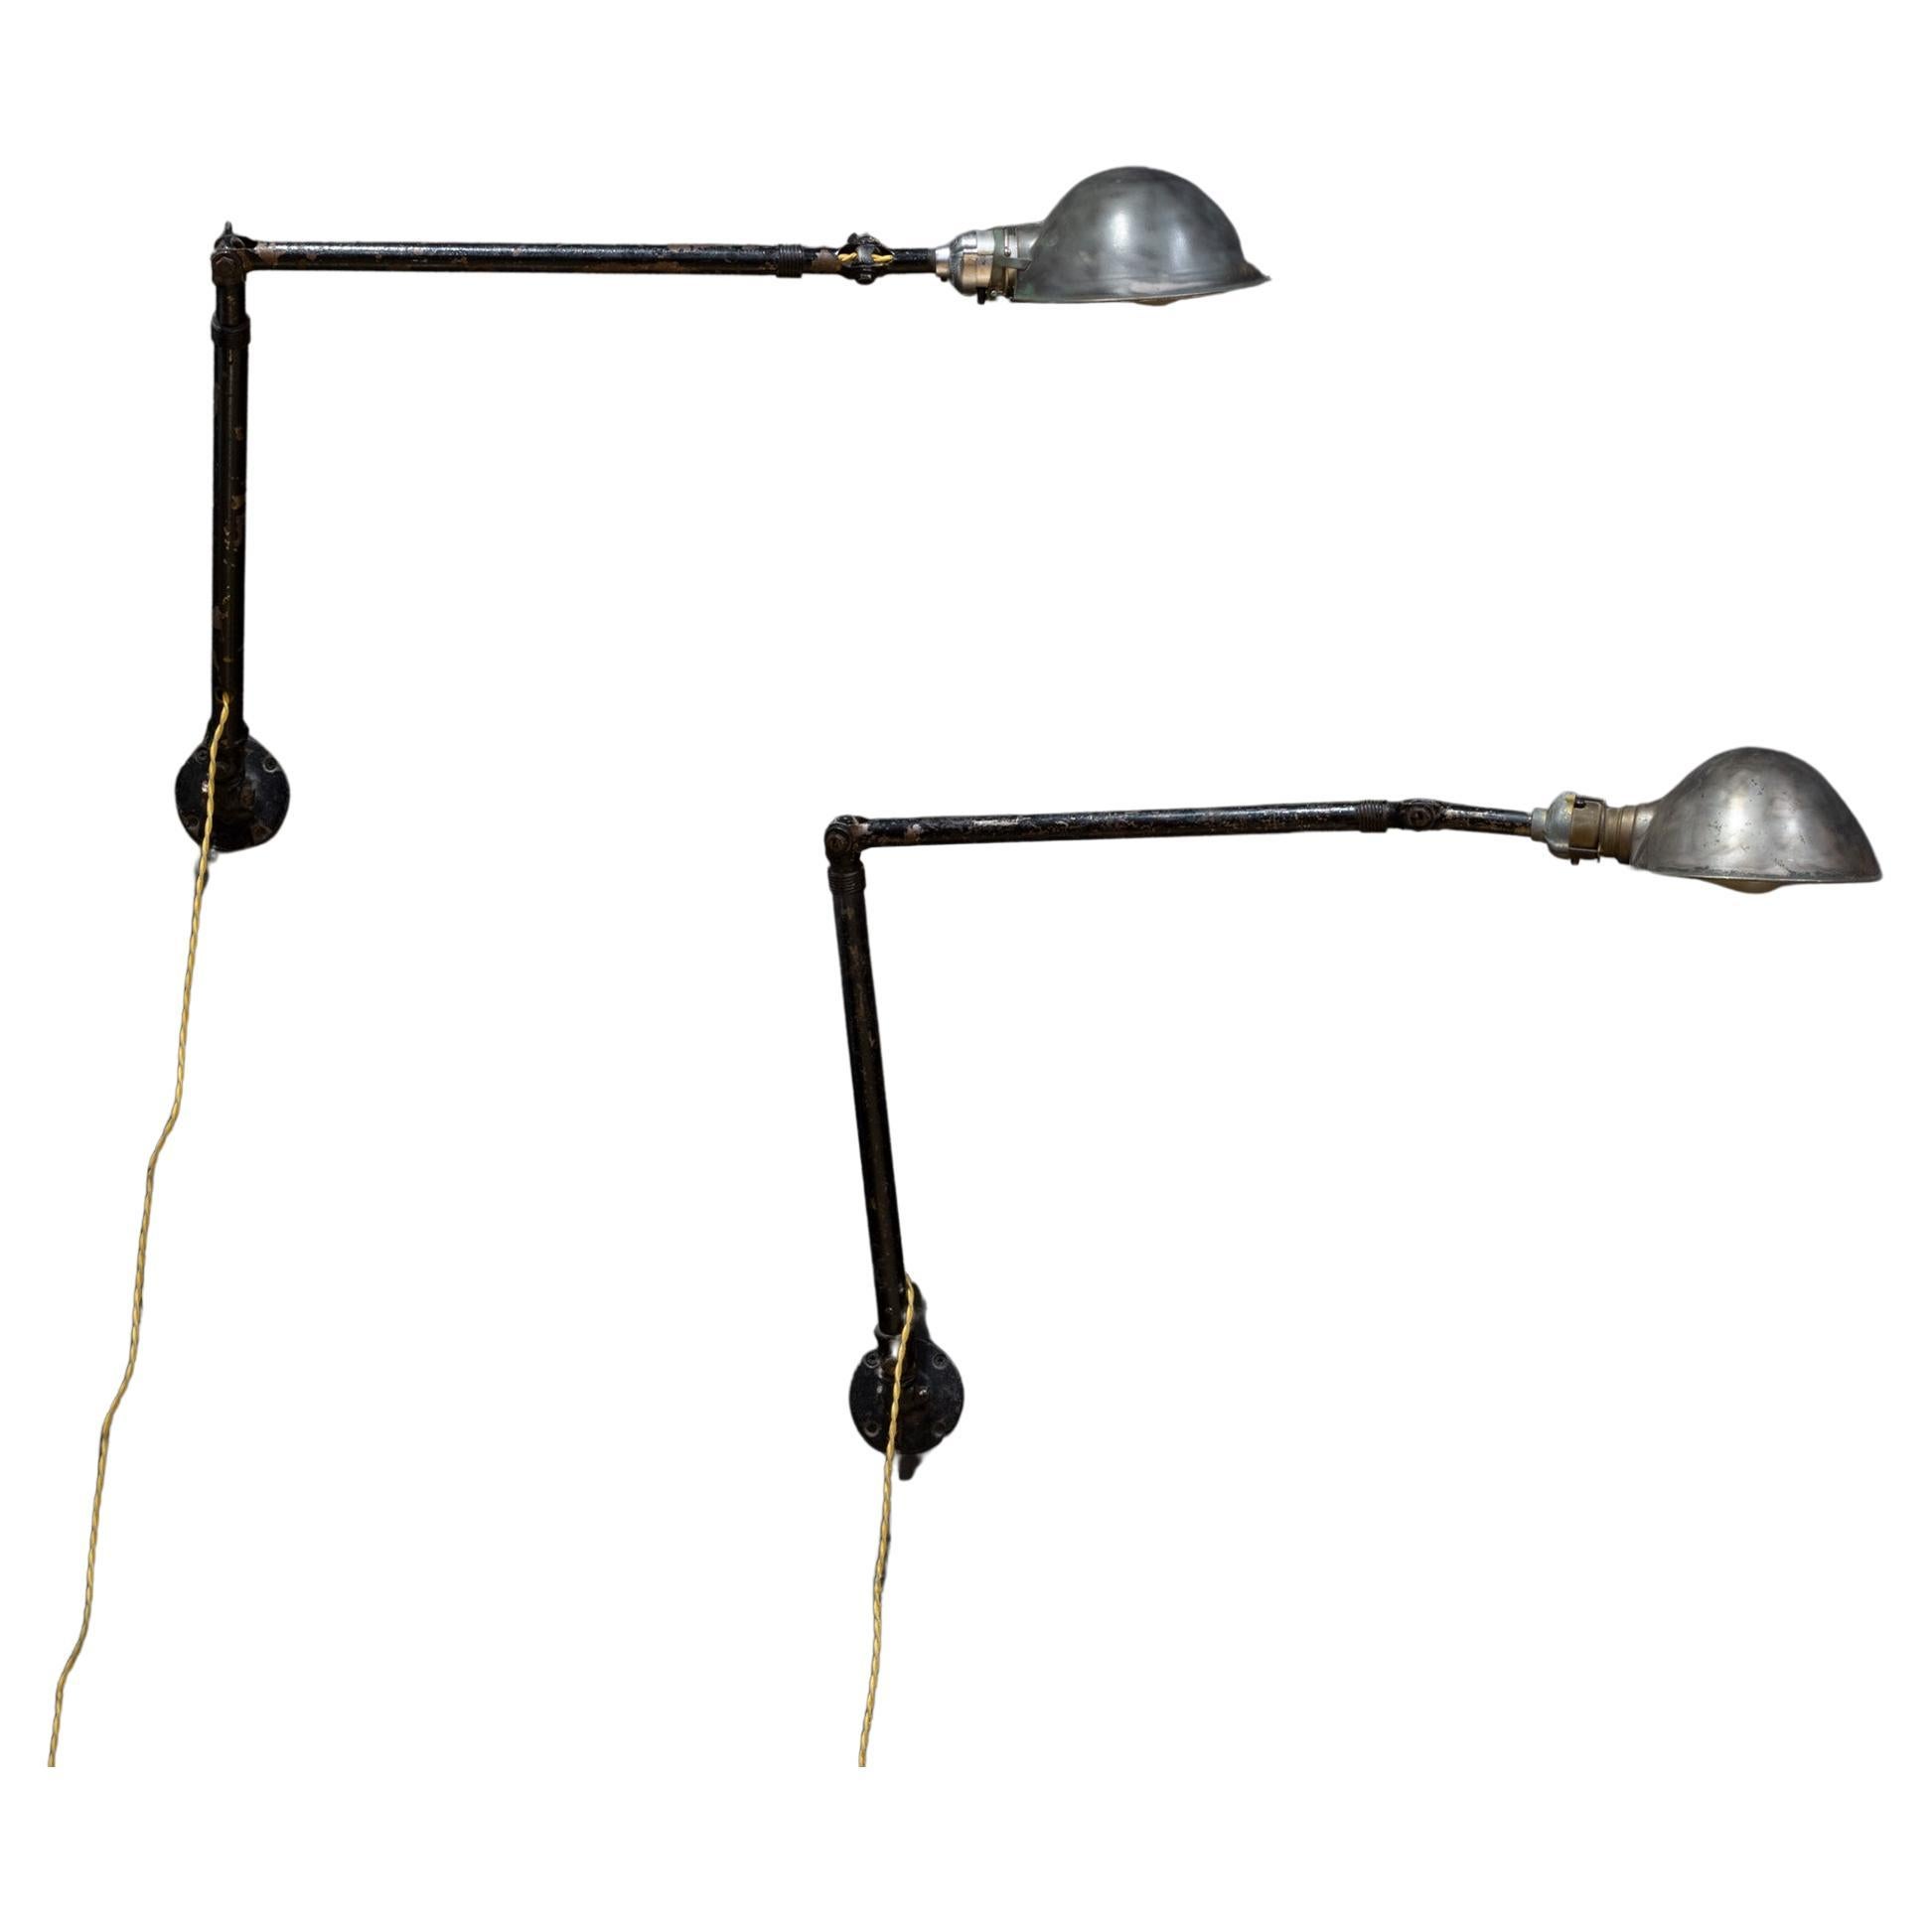 Lampe industrielle articulée Ajusco, vers 1930, expédition gratuite